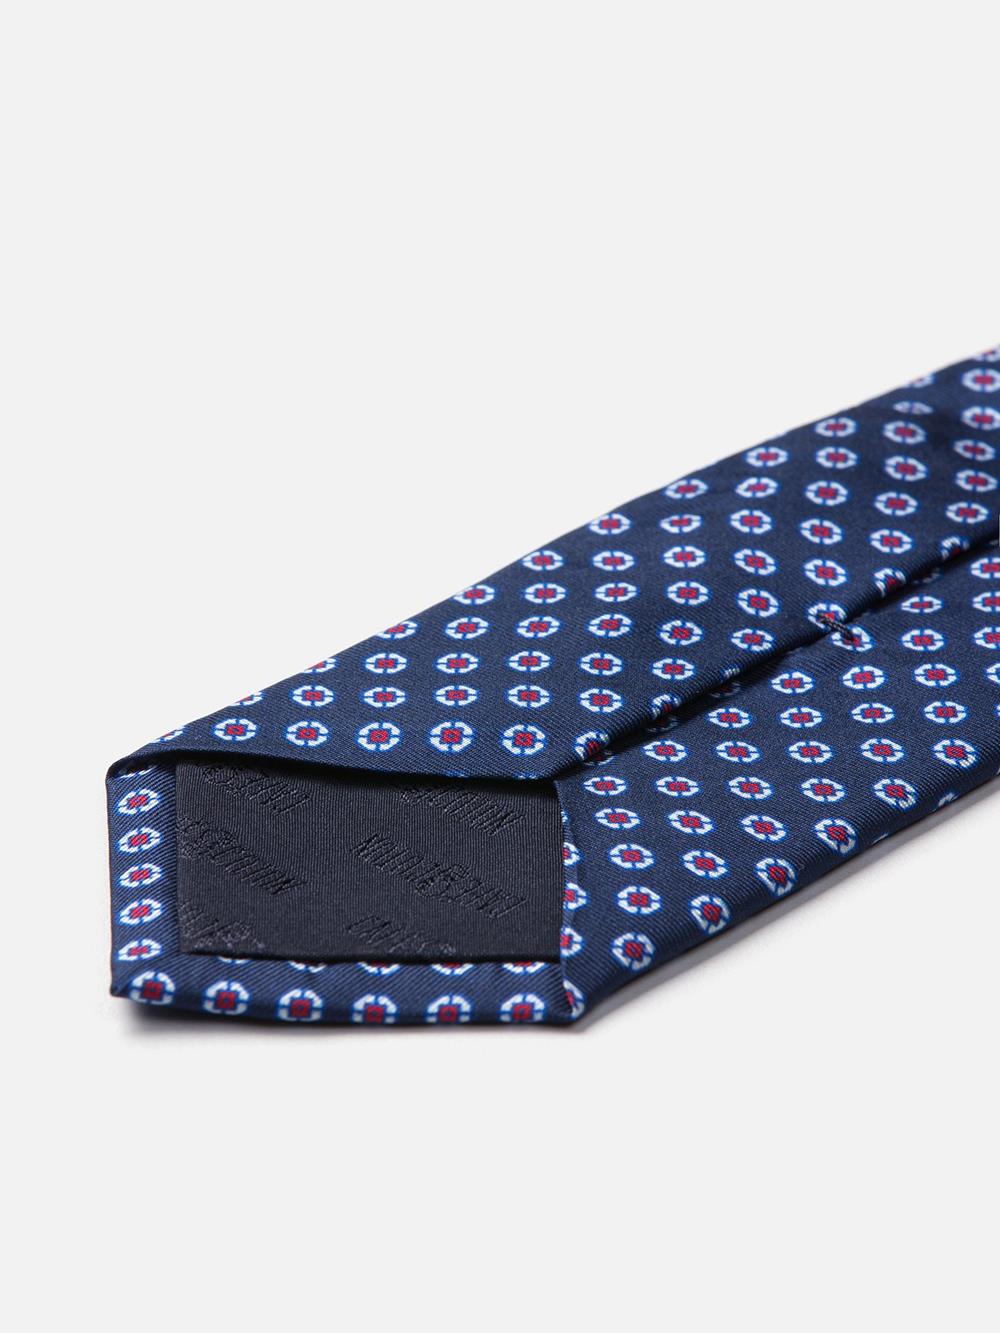 Cravate en soie marine à motifs imprimés fuchsia